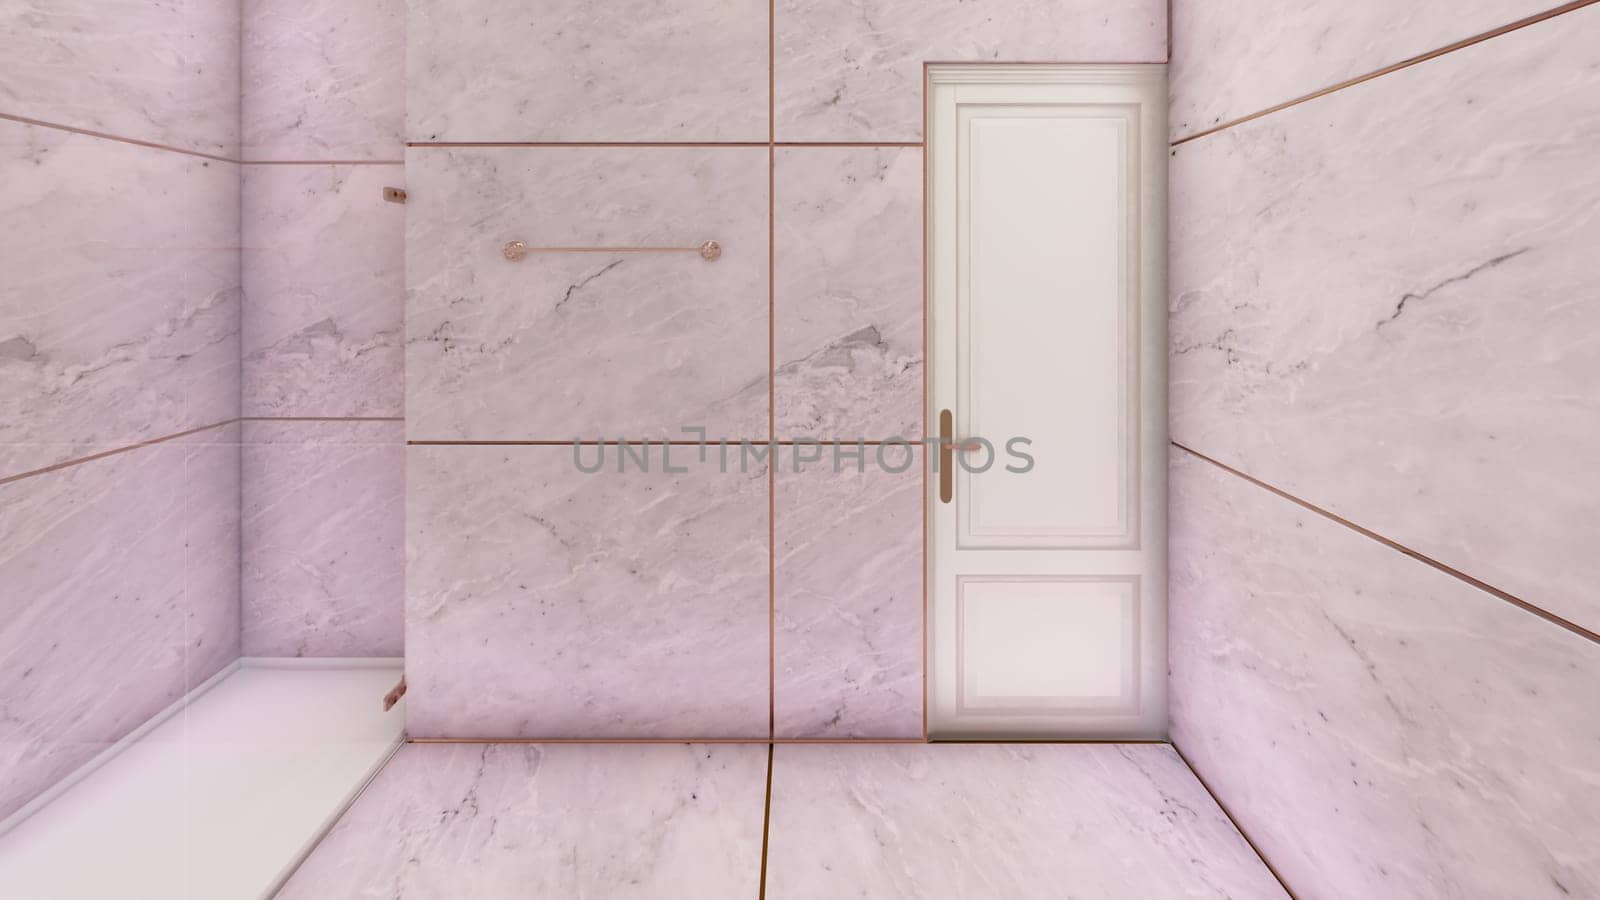 Mauve rose gold toilet interior design 3d rendering